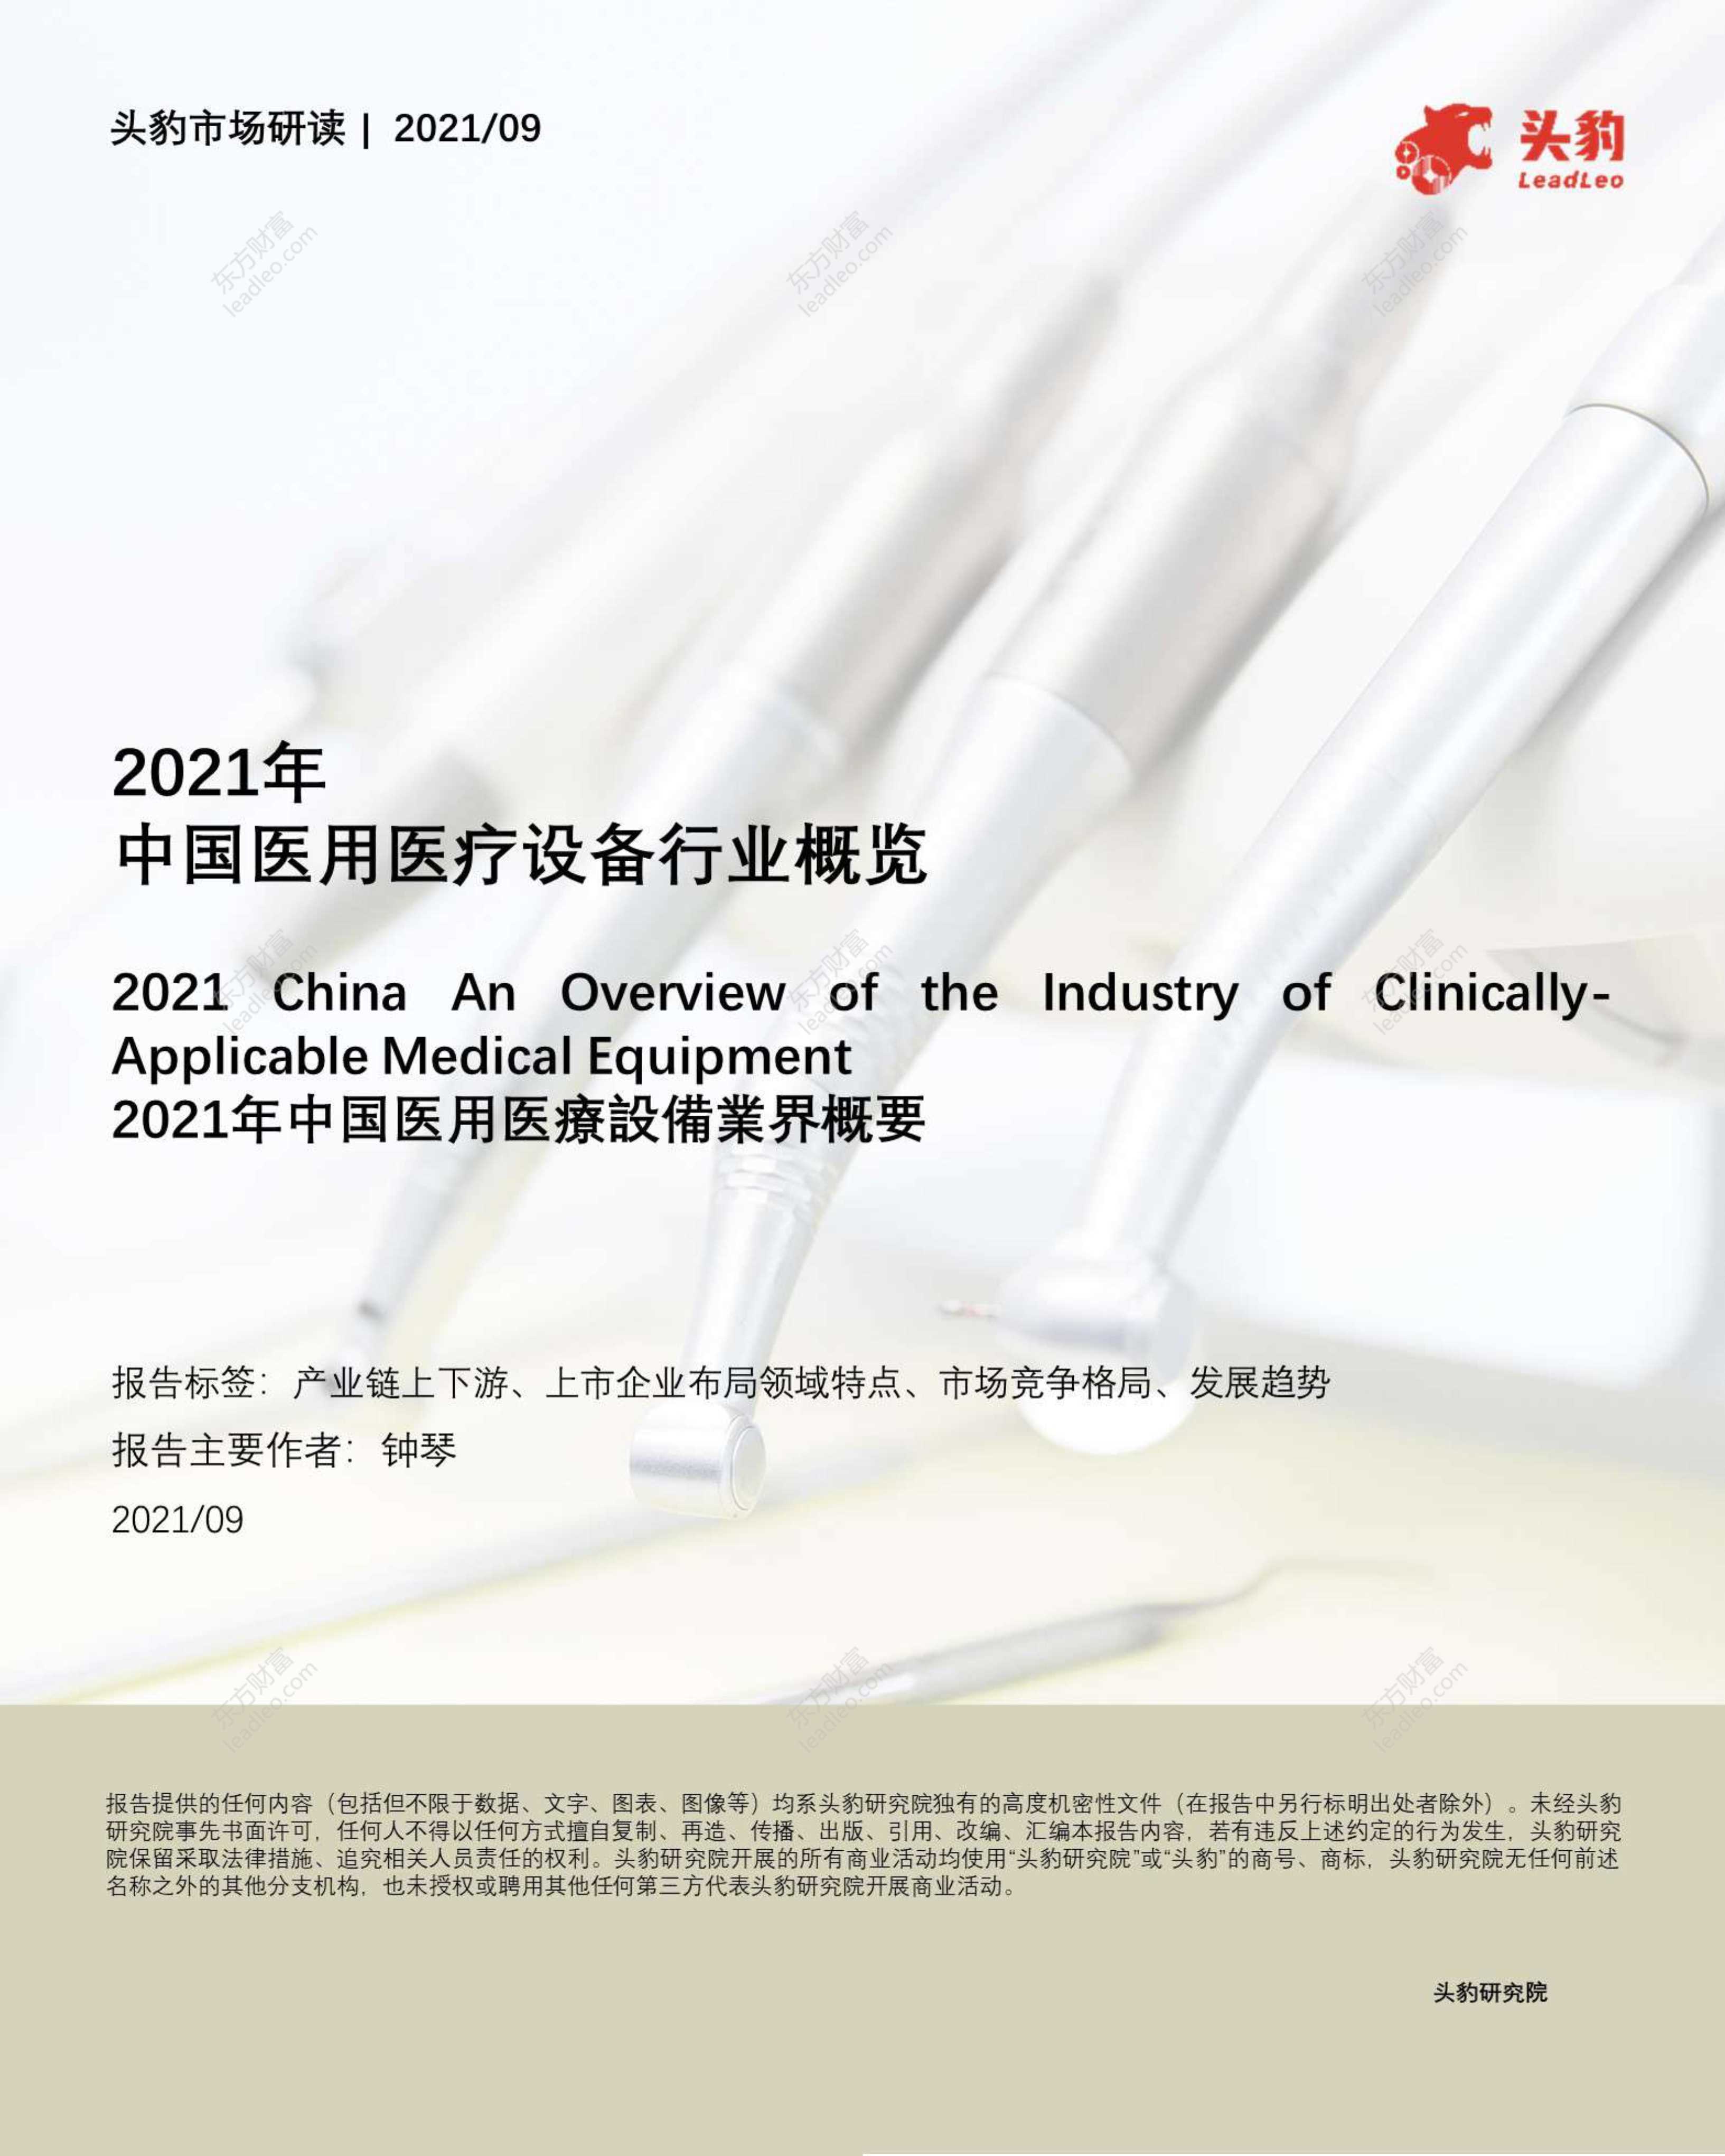 头豹研究院-2021年中国医用医疗设备行业概览-2021.10-39页